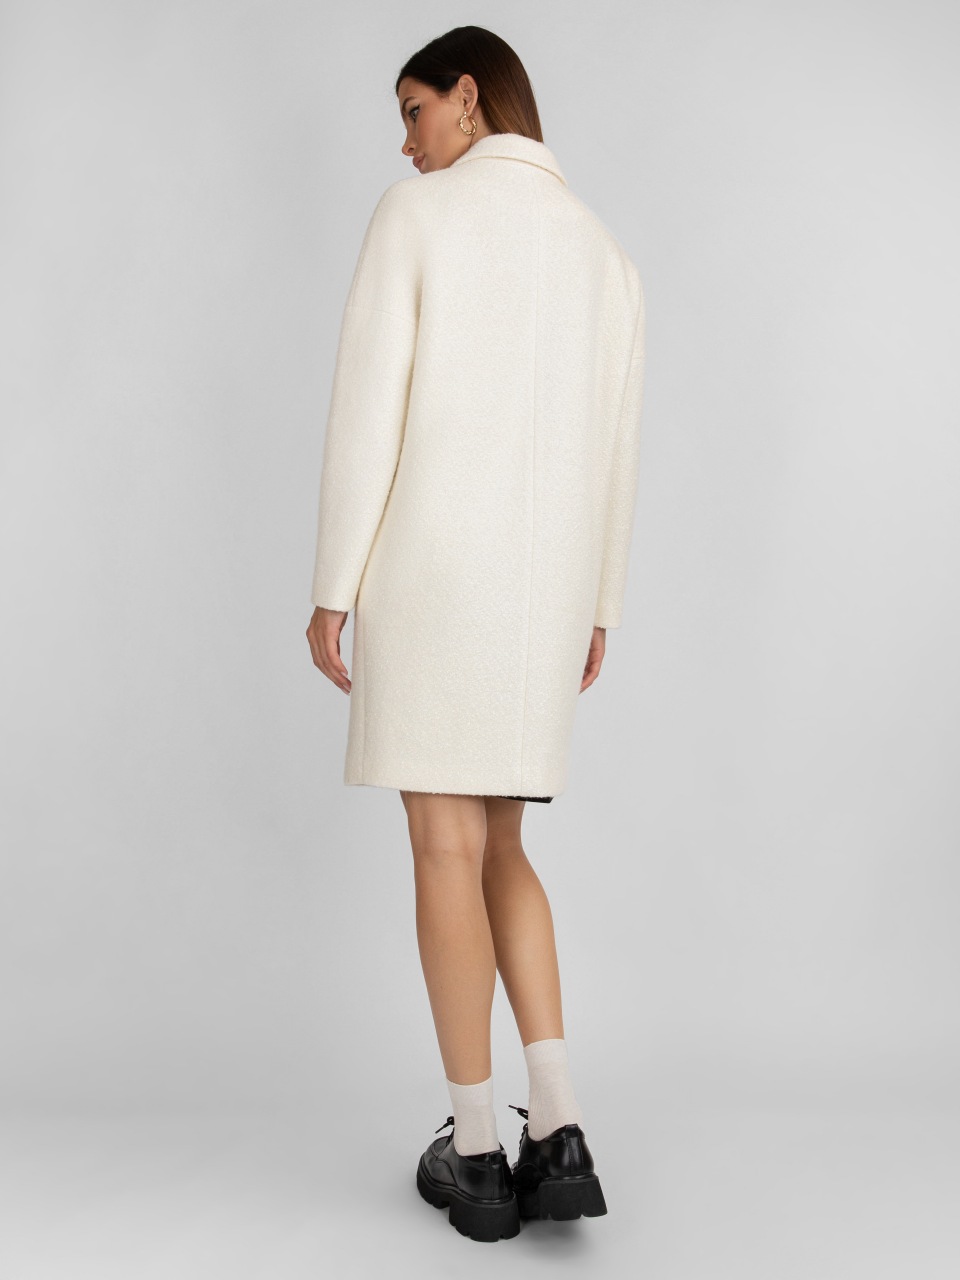 Пальто женское ElectraStyle 4-8023-225 белое 42 RU